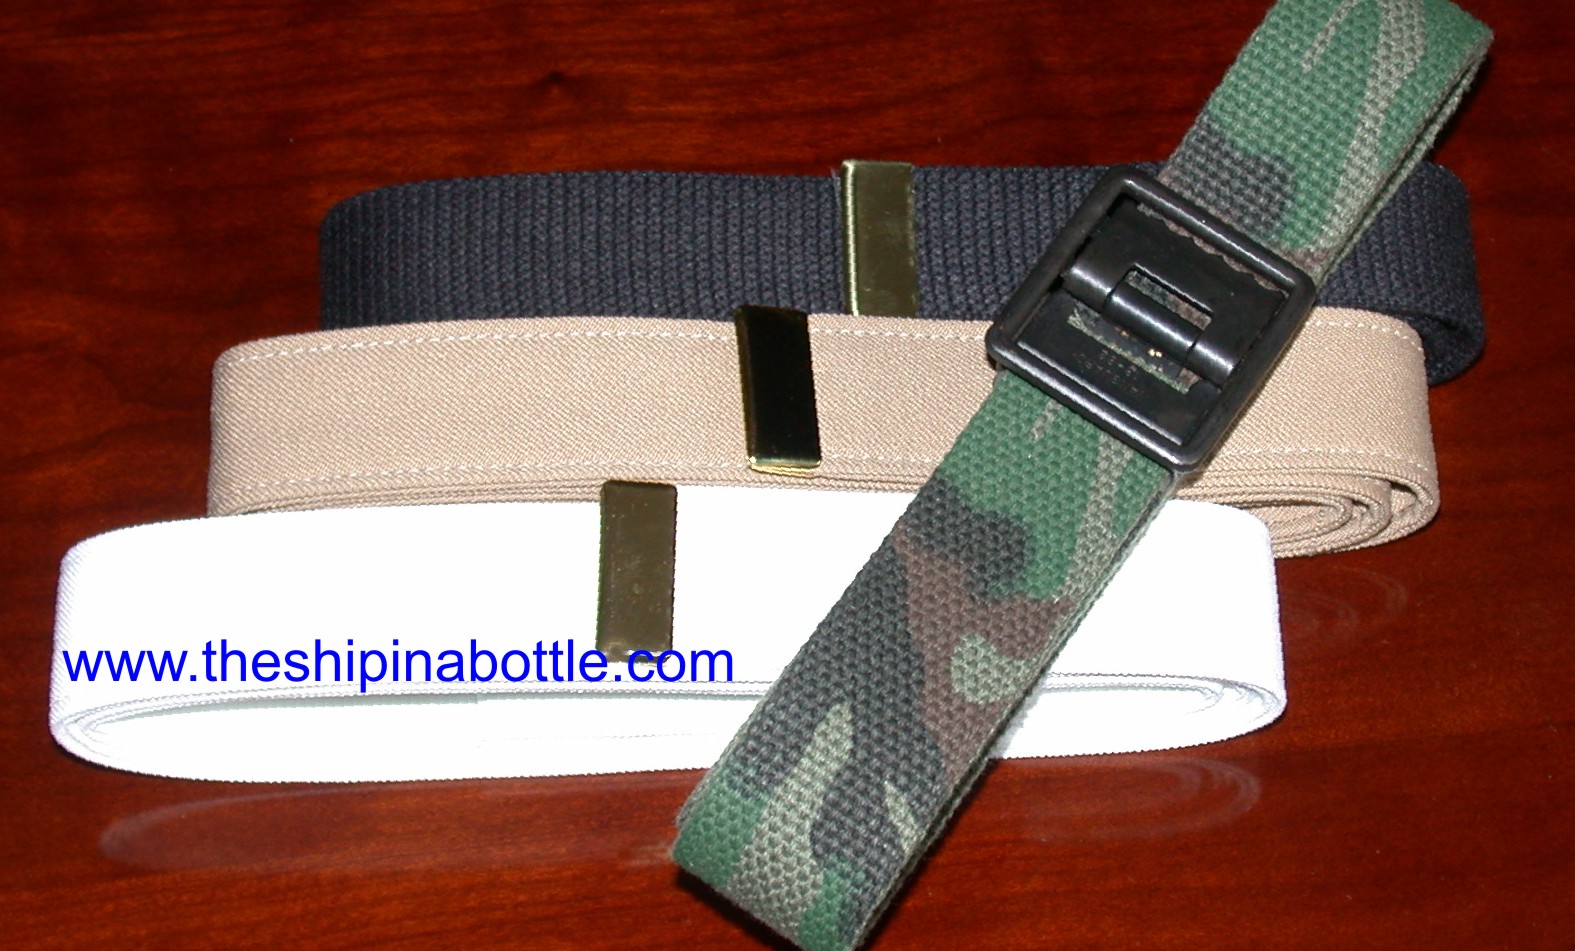 Authentic US Navy/SEABEE Uniform Belt - www.theshipinabottle.com